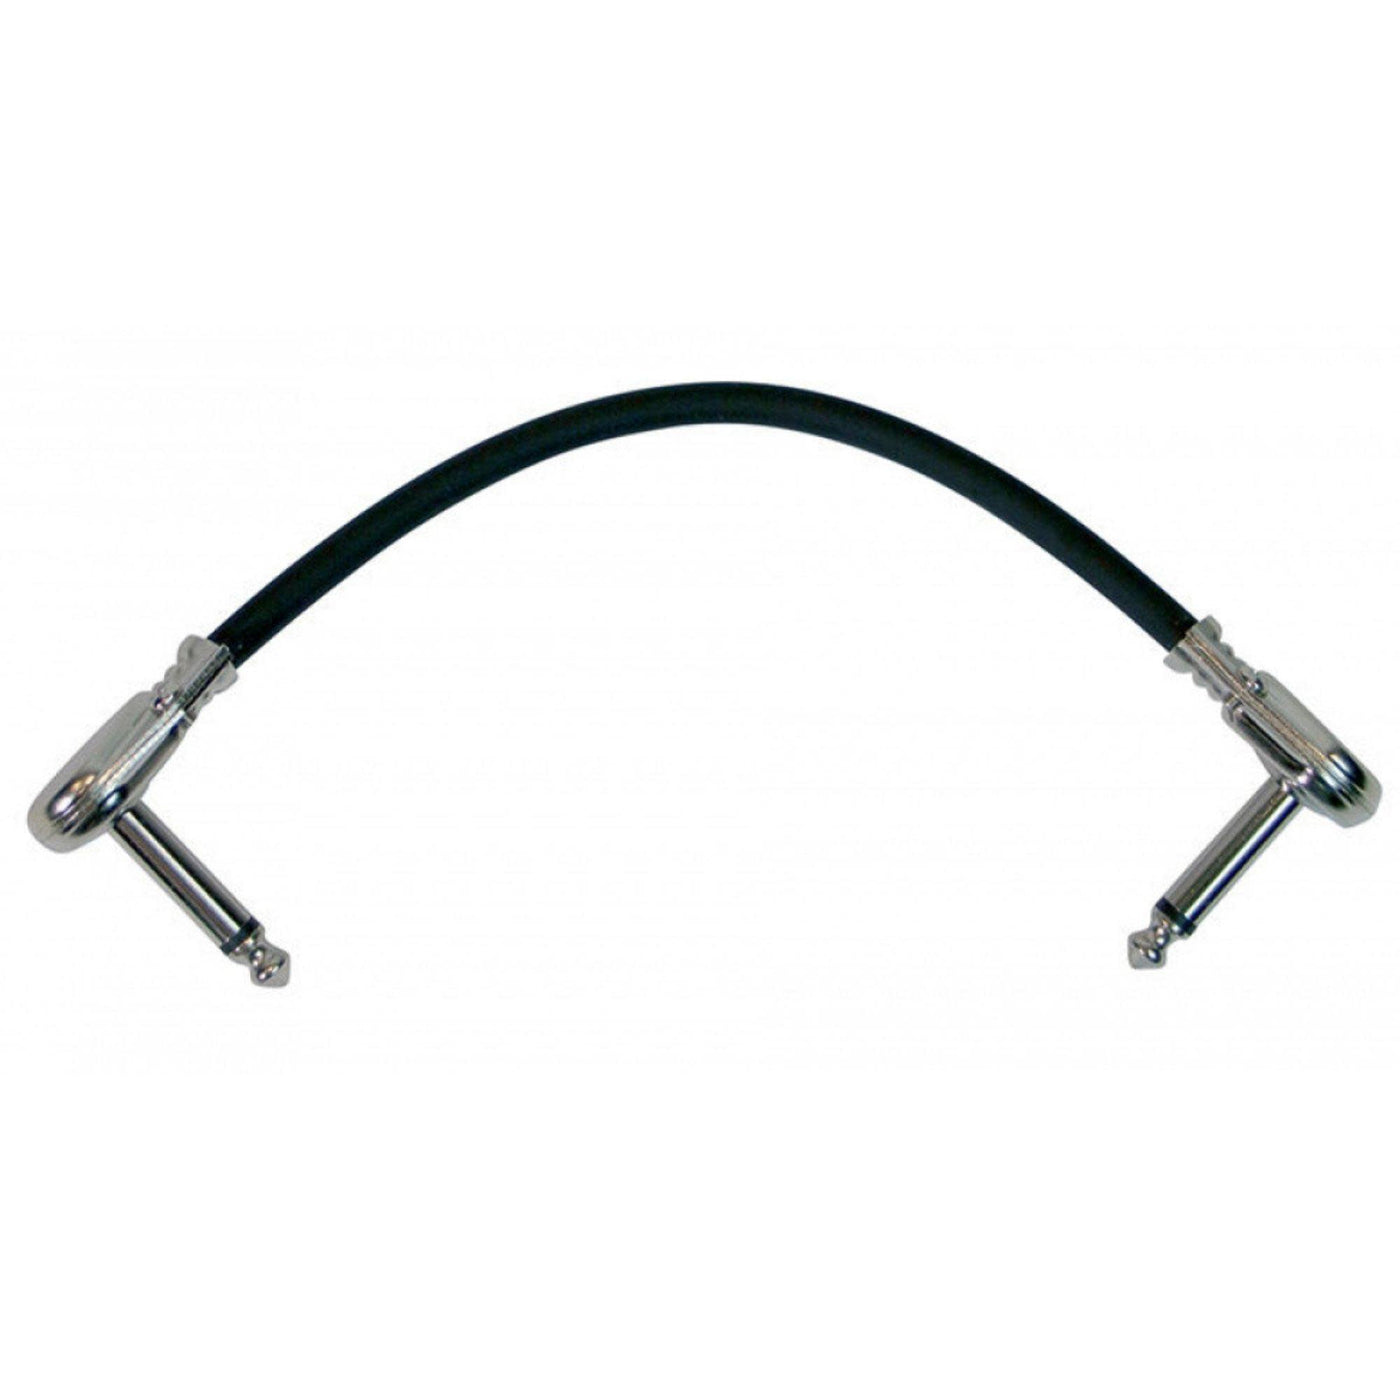 6" Patch Cable w/ Pancake Connectors (Black)